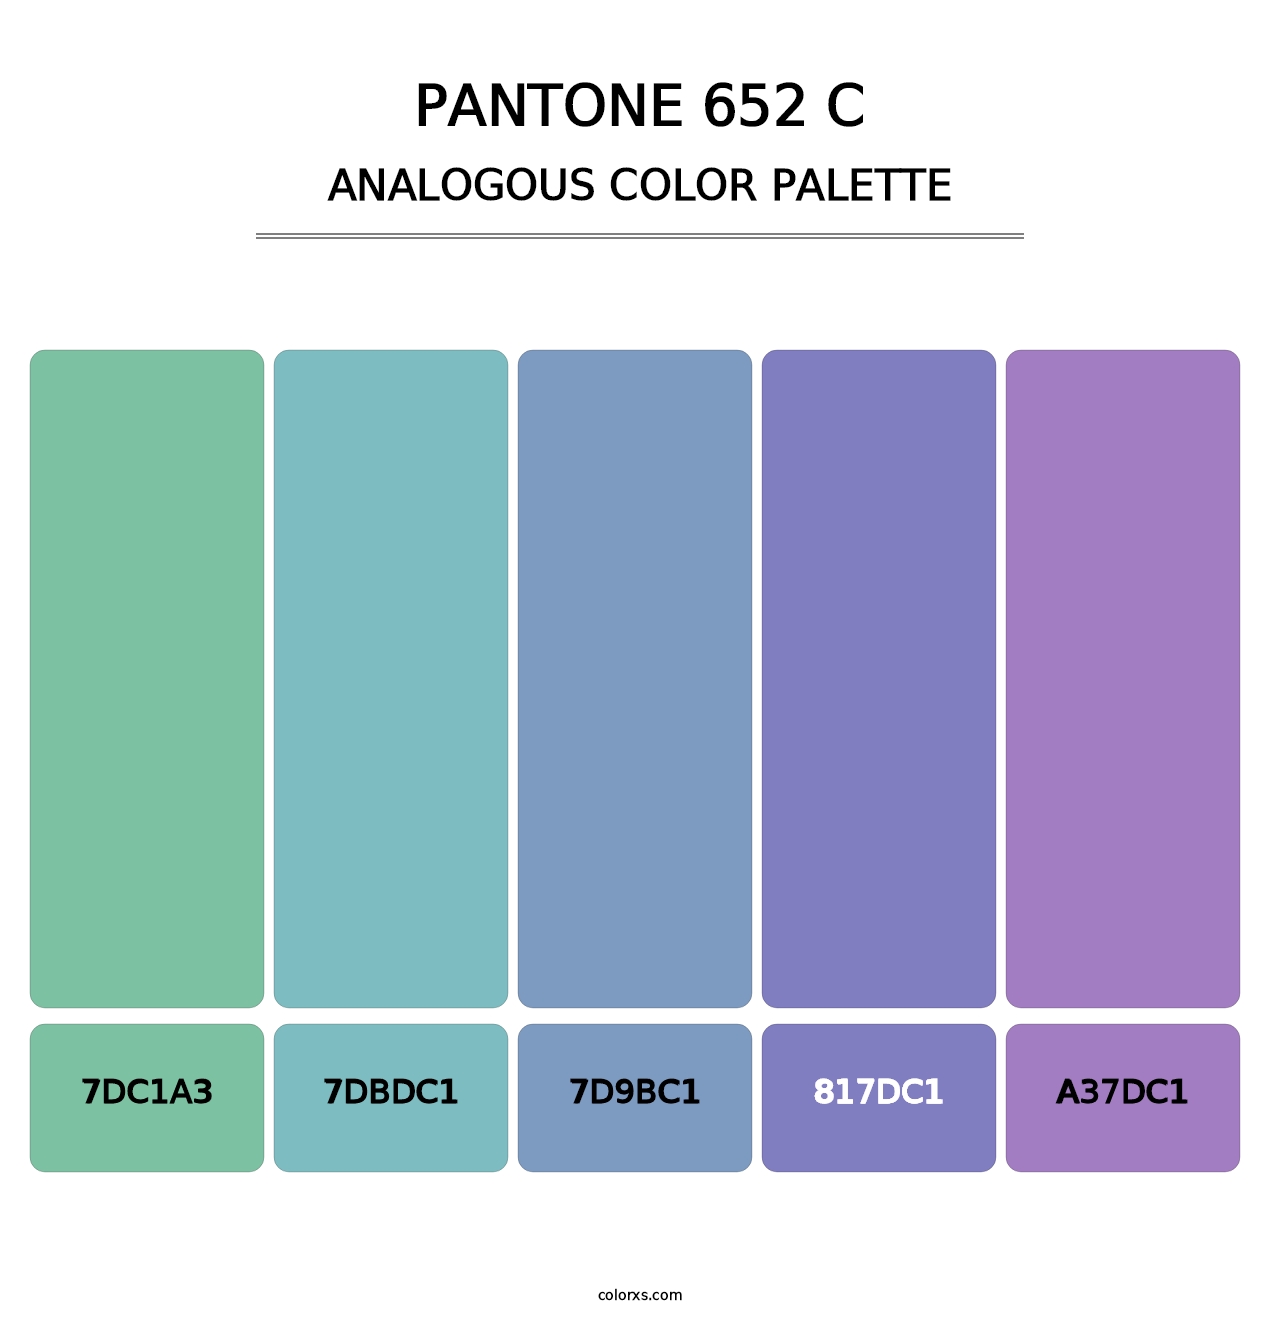 PANTONE 652 C - Analogous Color Palette